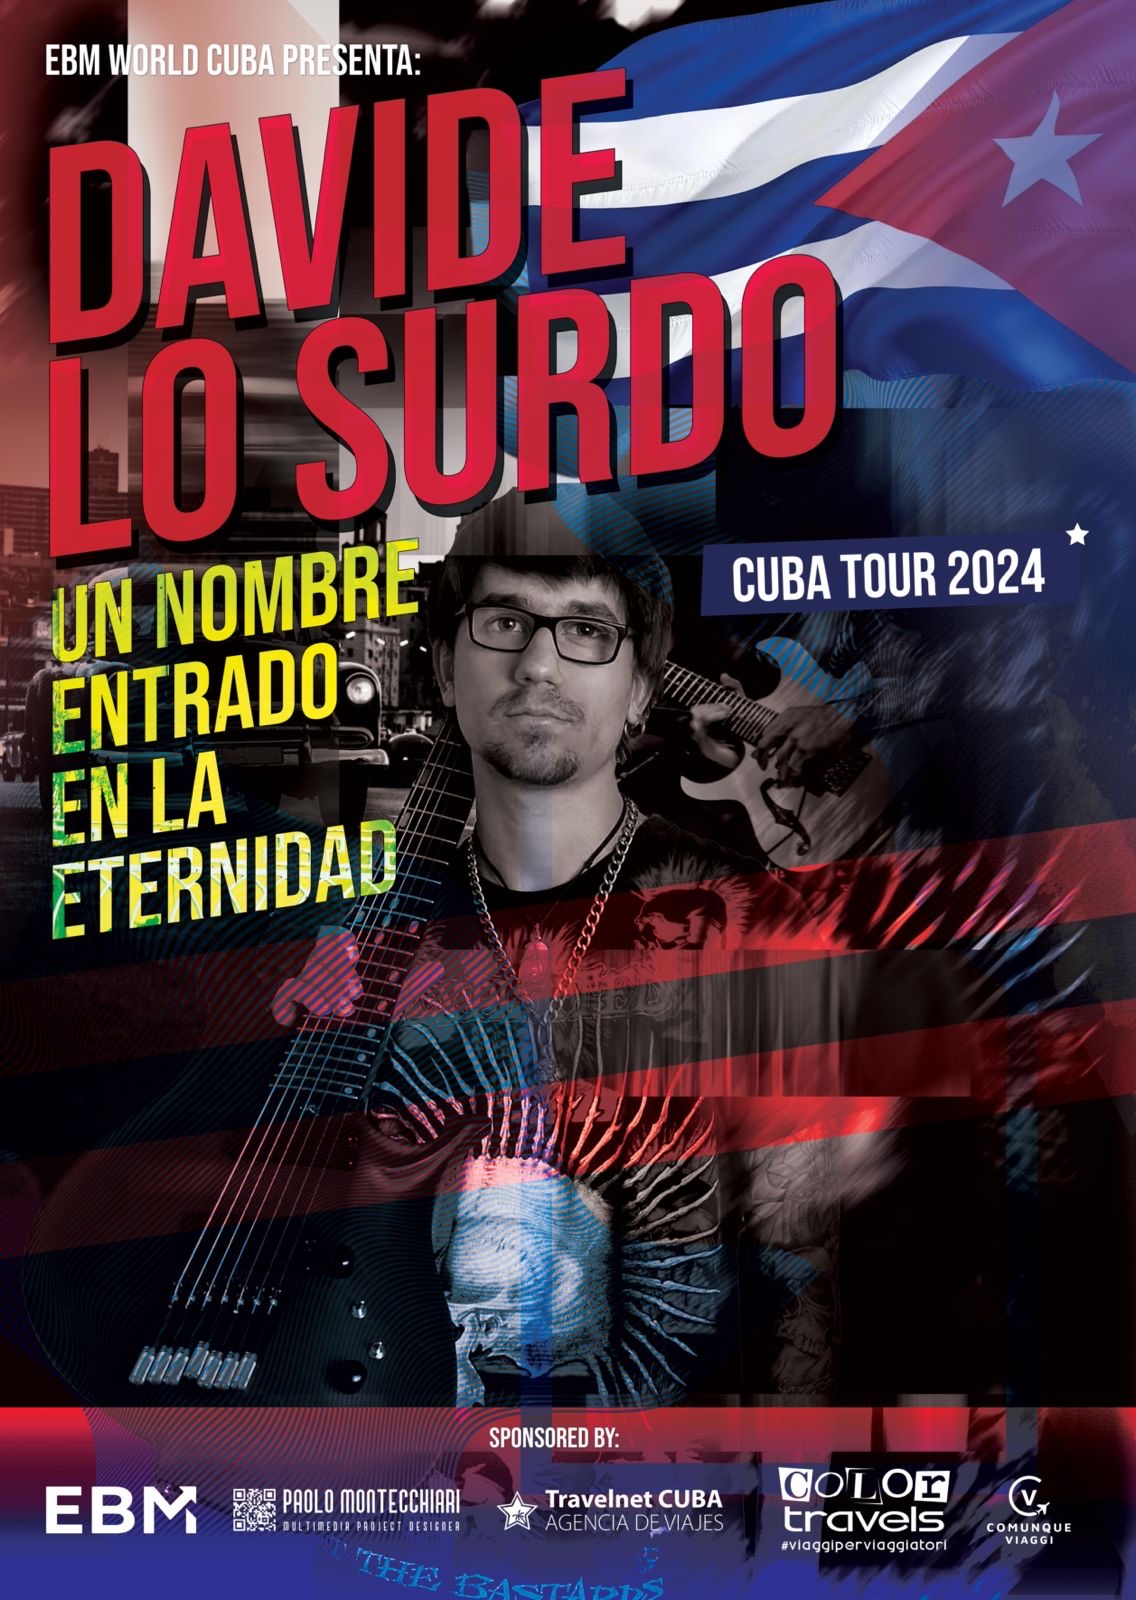 Davide Lo Surdo: il chitarrista entrato nell’eternità annuncia un tour a Cuba